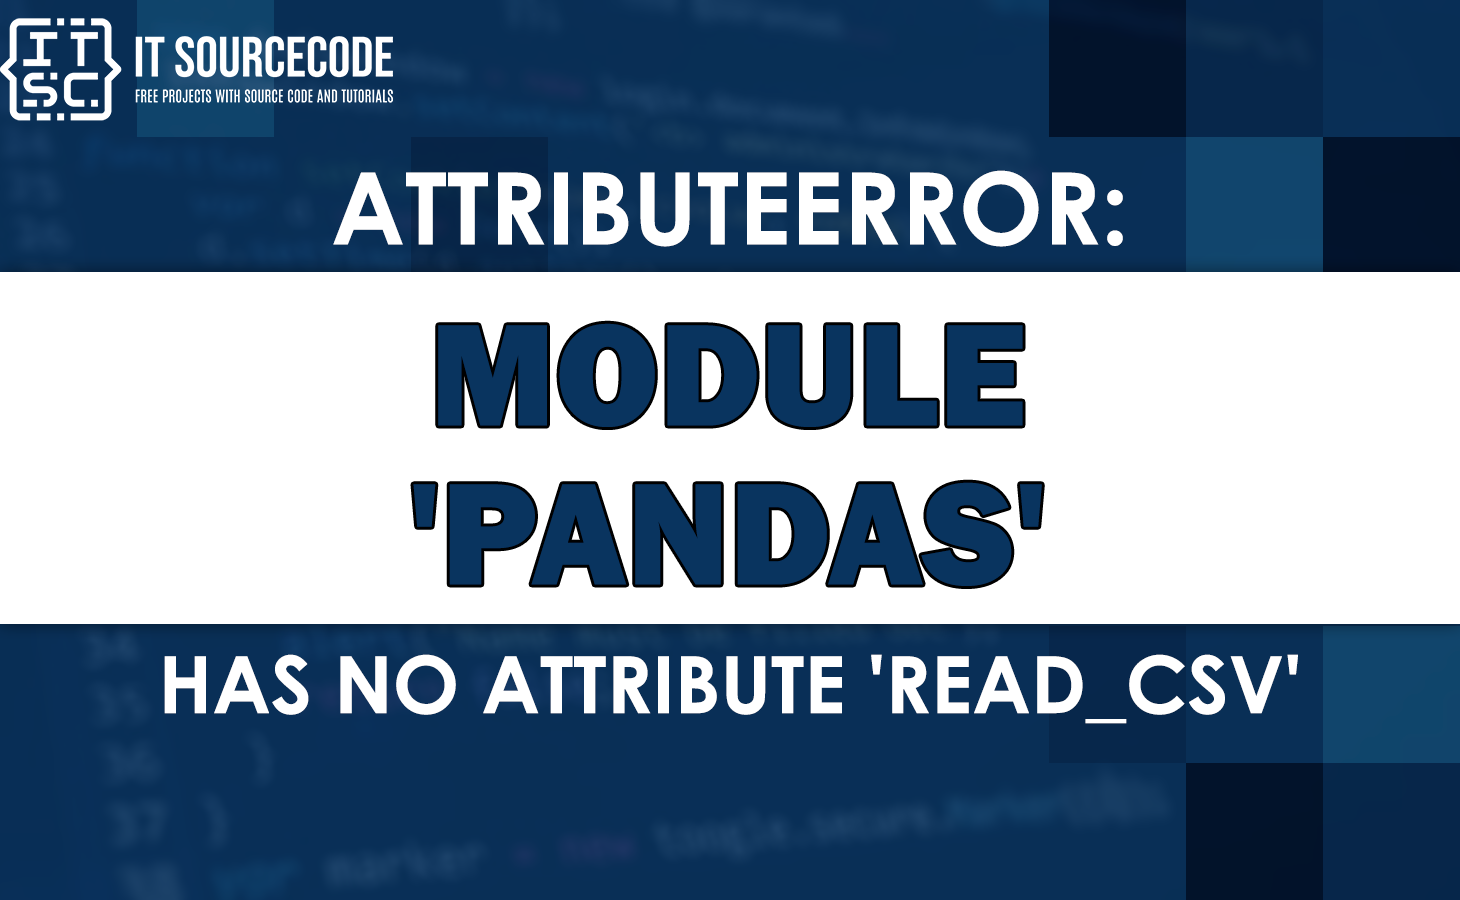 Attributeerror: module pandas has no attribute read_csv